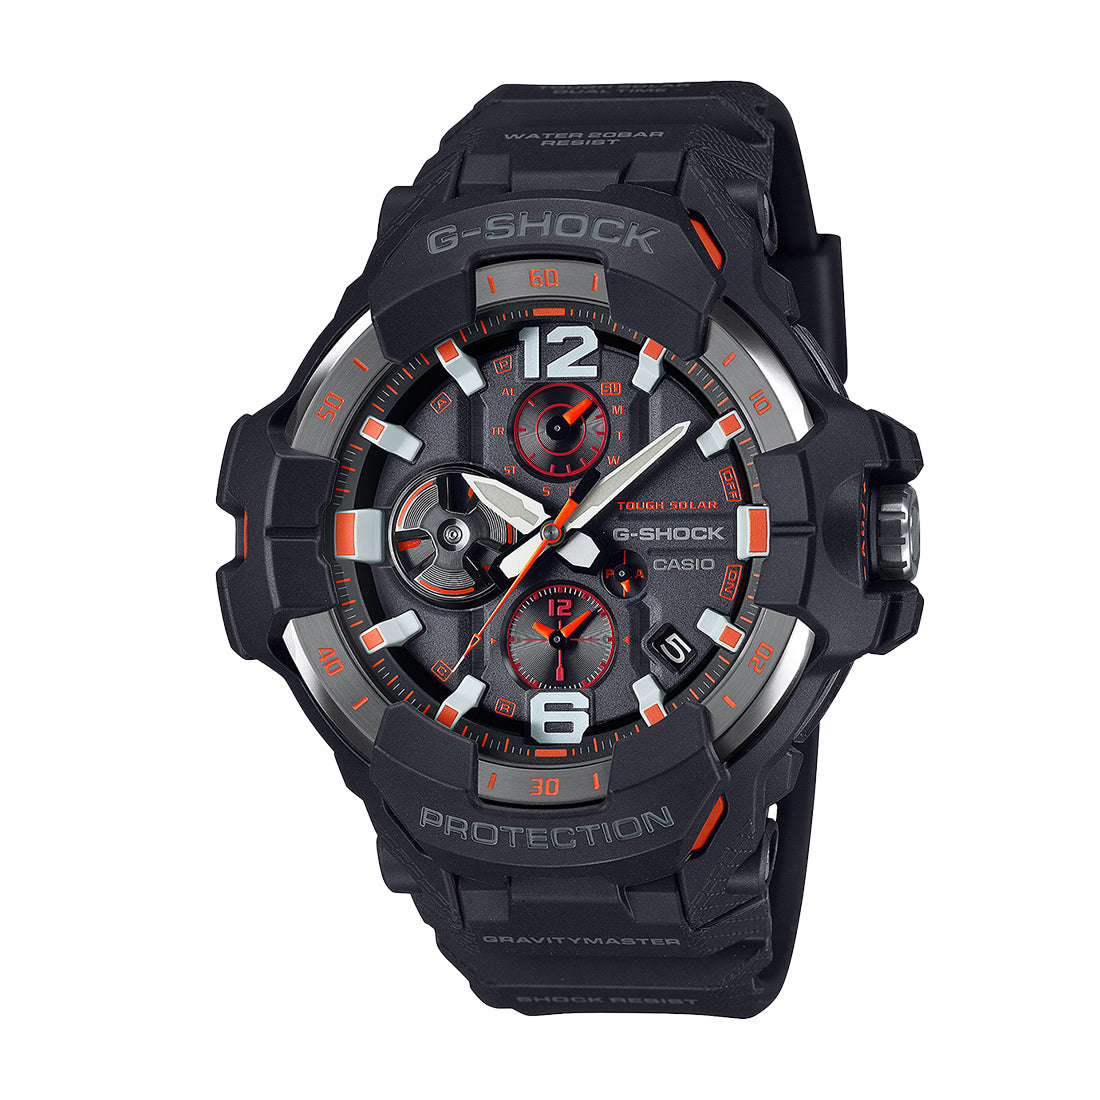 高品質新品新品 GRAVITYMASTER グラビティマスター G-SHOCK Gショック ジーショック カシオ CASIO 腕時計 カーボンコアガード構造 GR-B200-1A2 コラボレーションモデル